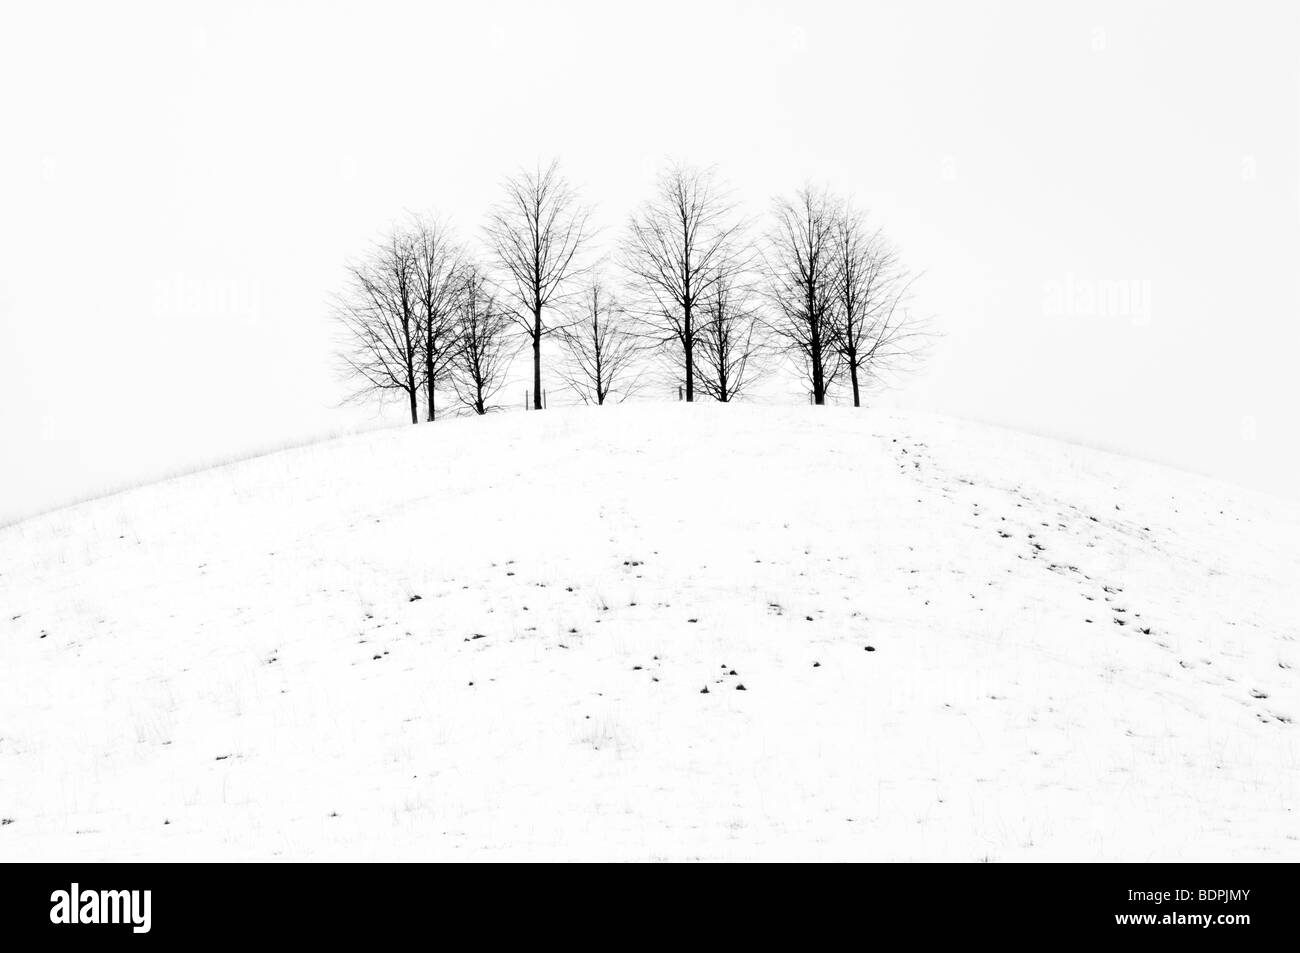 Ländliches Motiv schwarz / weiß von Schnee bedeckt kleine Hügel mit Bäumen auf entnommen Cotswold Way in der Nähe von Old Sodbury, uk Stockfoto